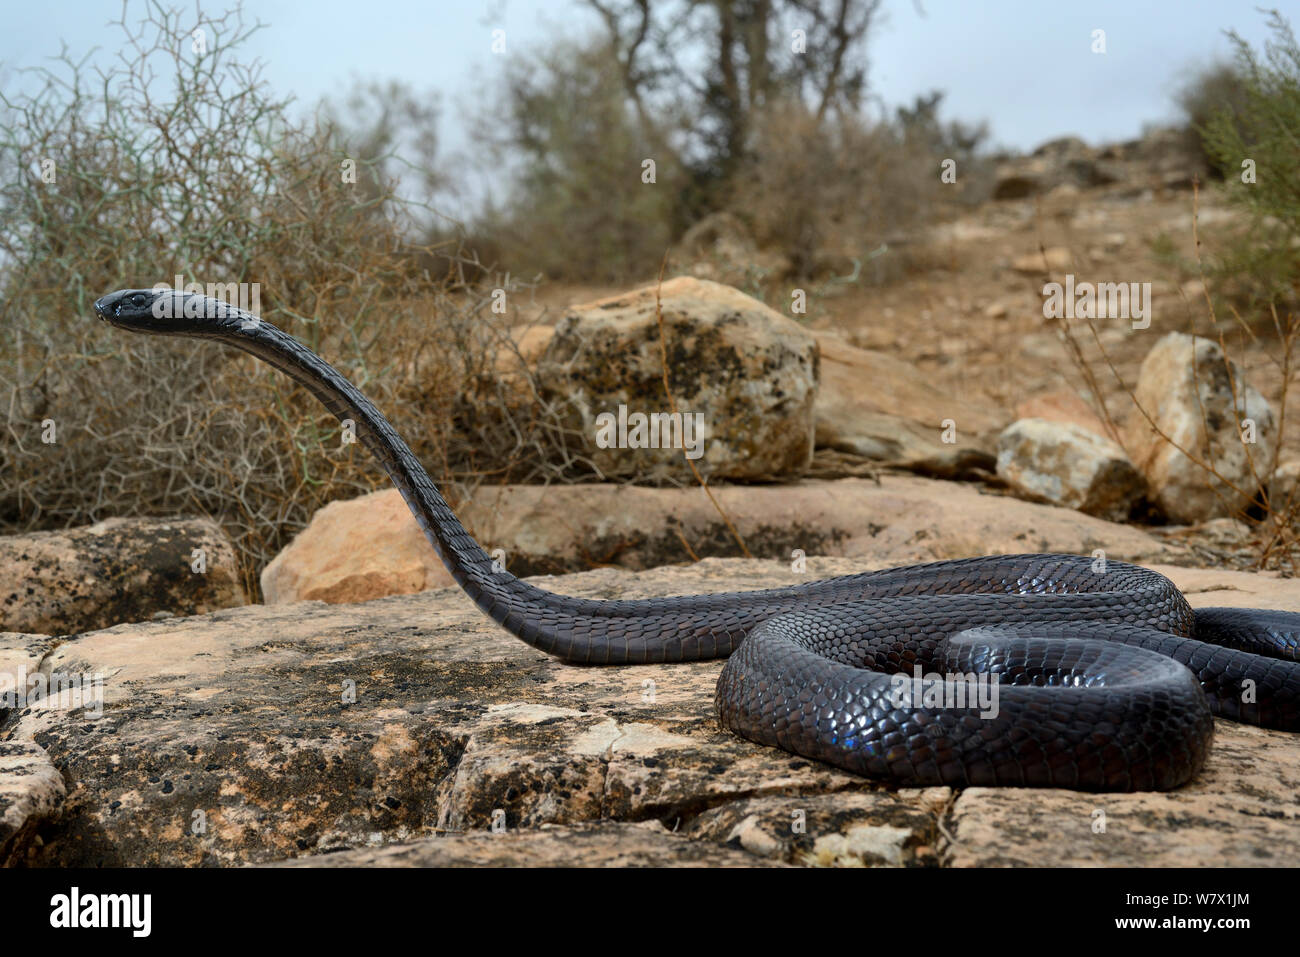 Egyptian cobra (Naja haje) with head raised up and hood expanded, near Taroudant, Morocco. Stock Photo